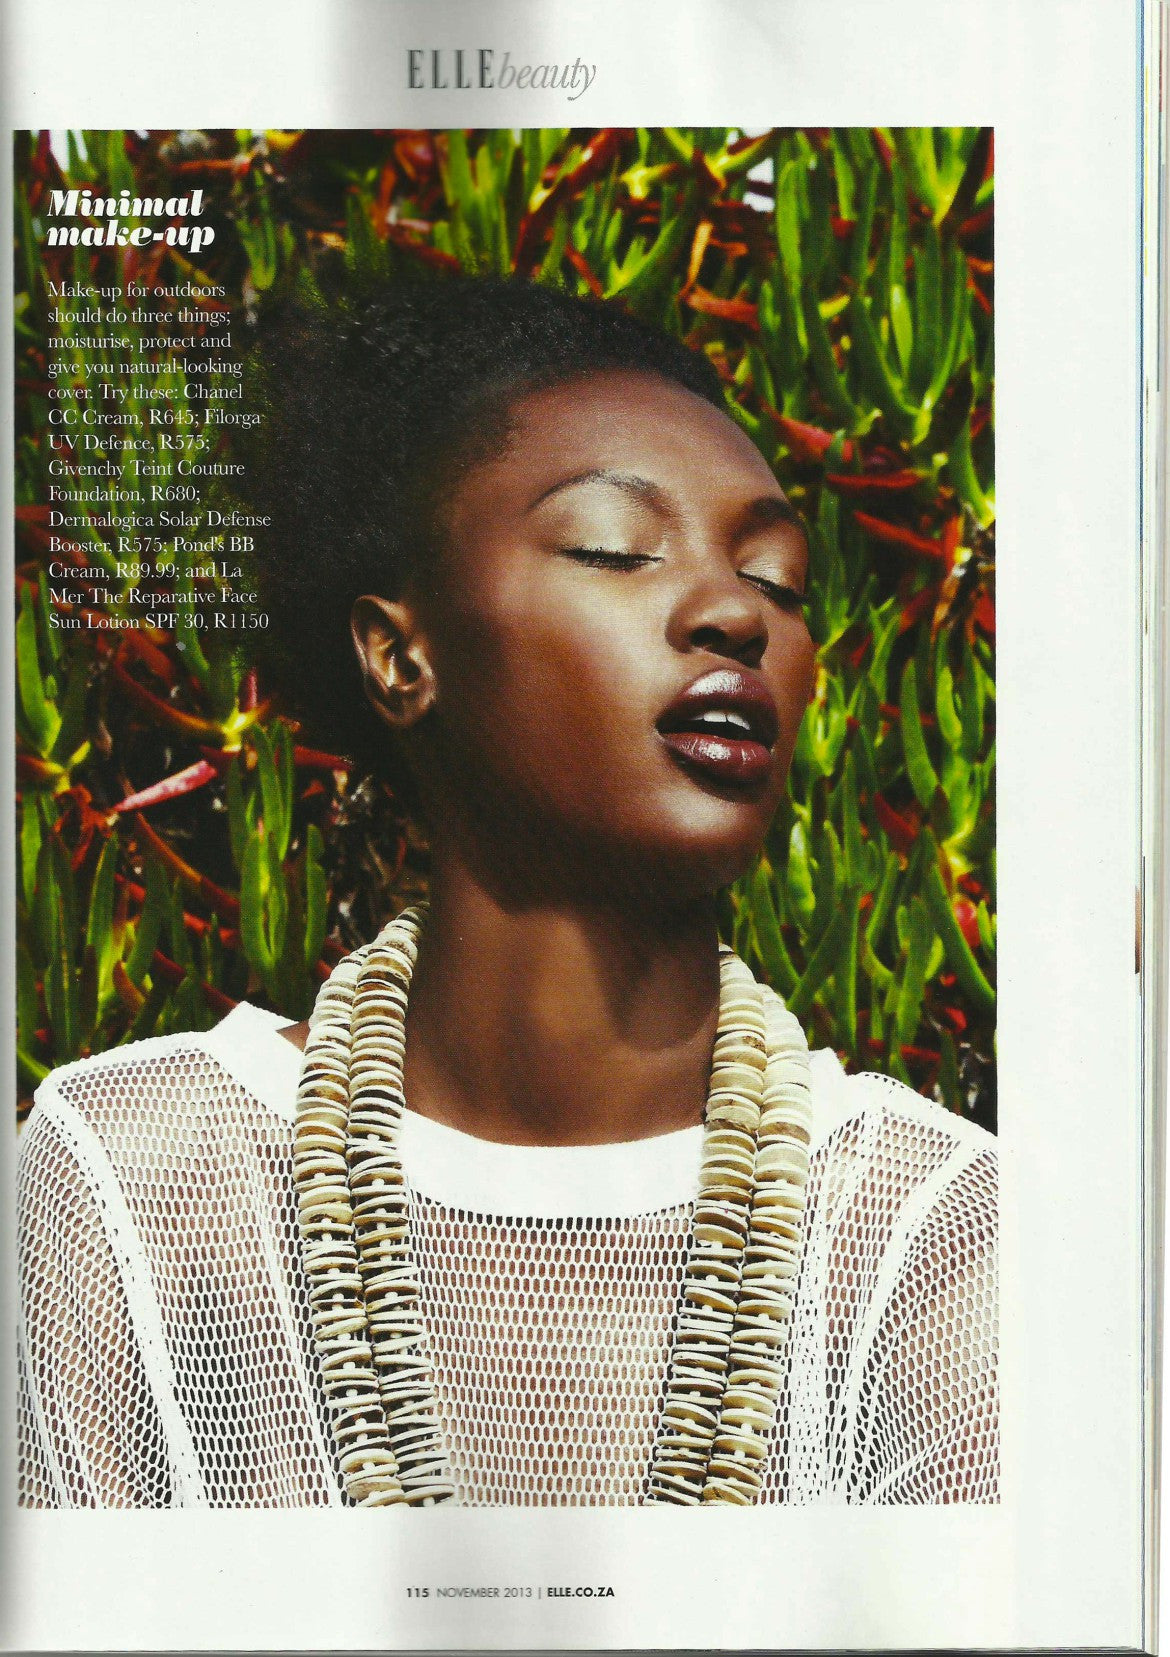 Media: Elle Magazine November 2013